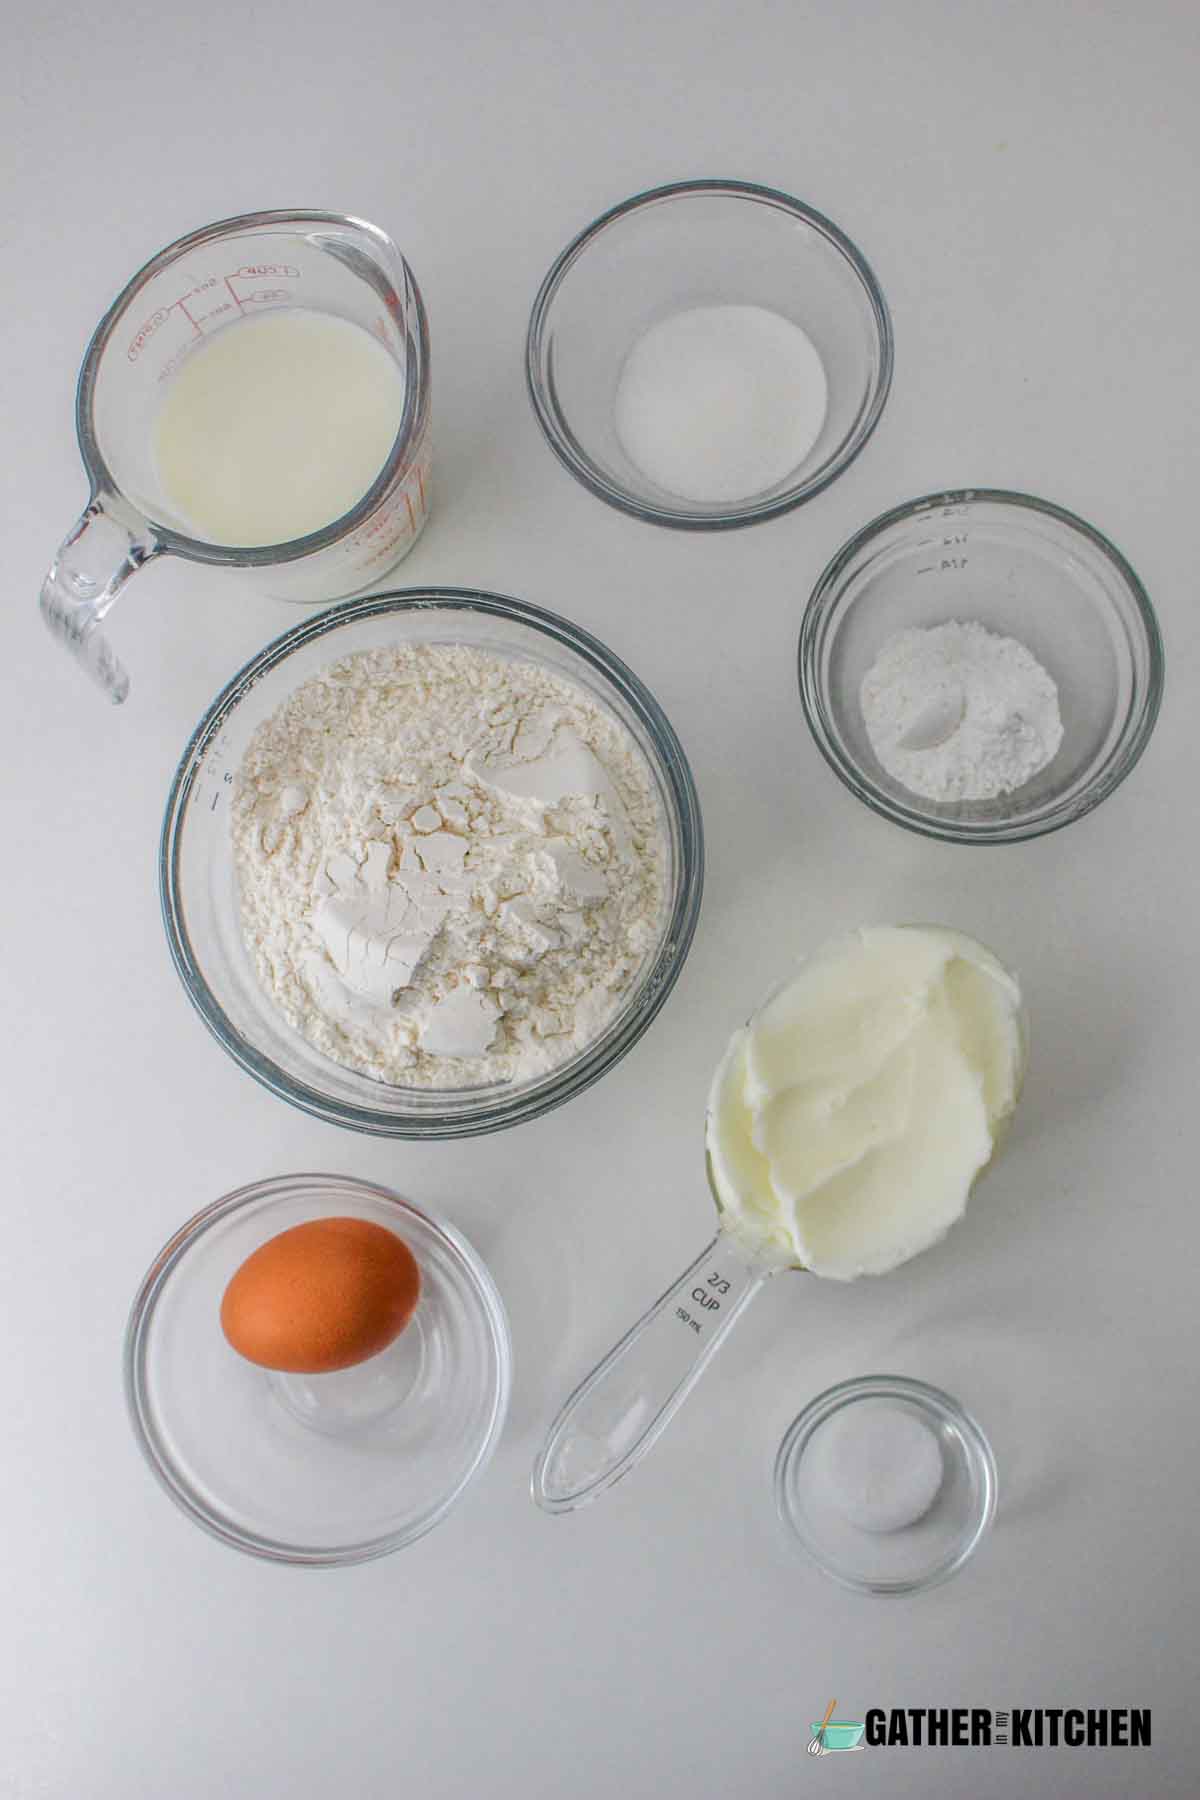 Ingredients: flour, baking powder, salt, sugar, shortening, and milk.